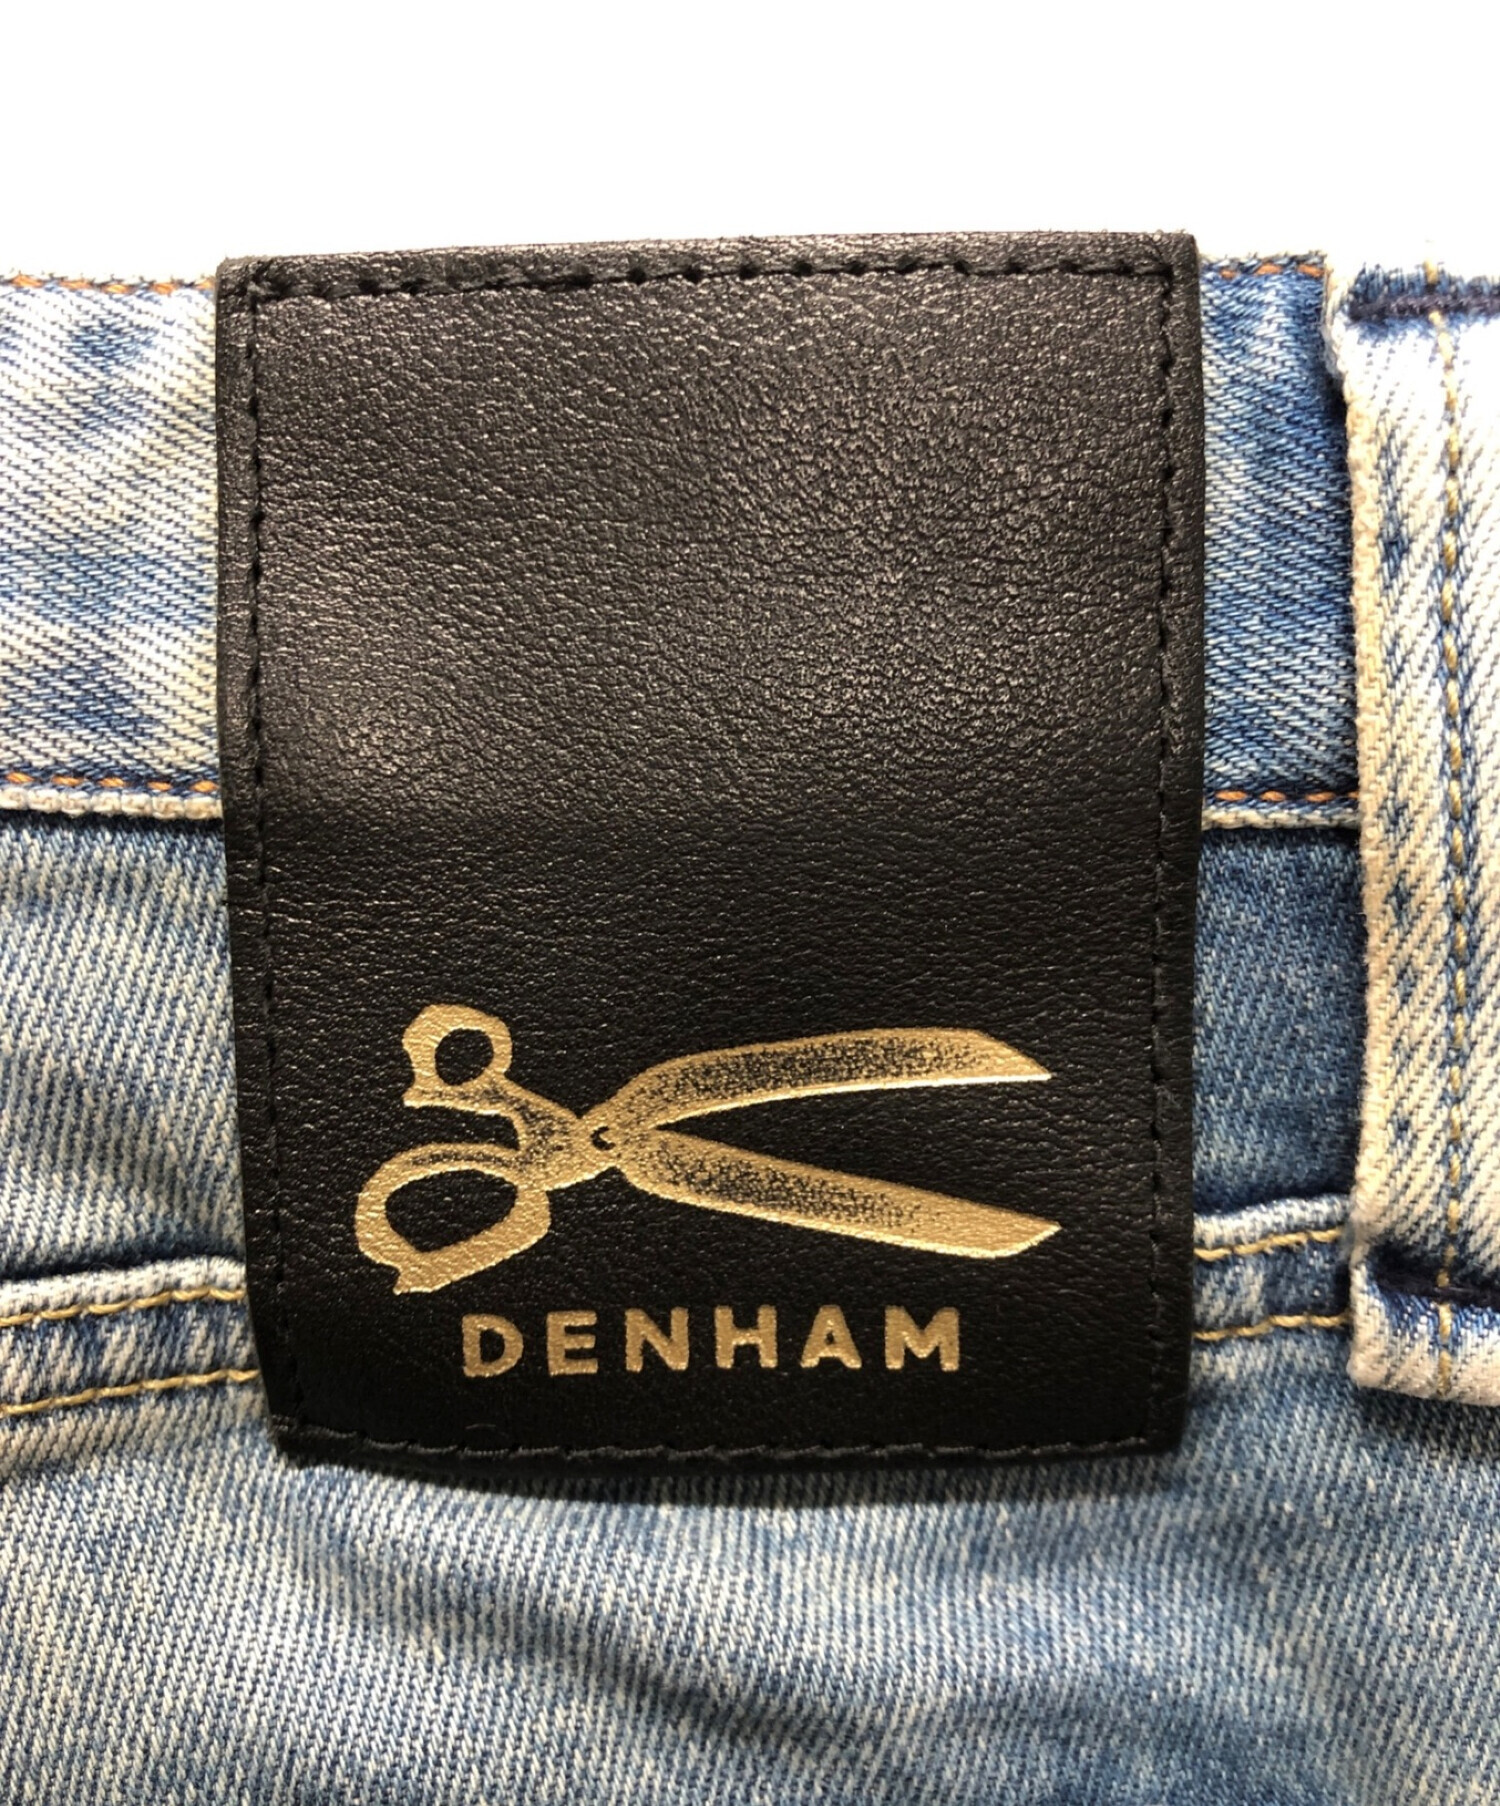 Denham (デンハム) ダメージデニムパンツ スカイブルー サイズ:W34